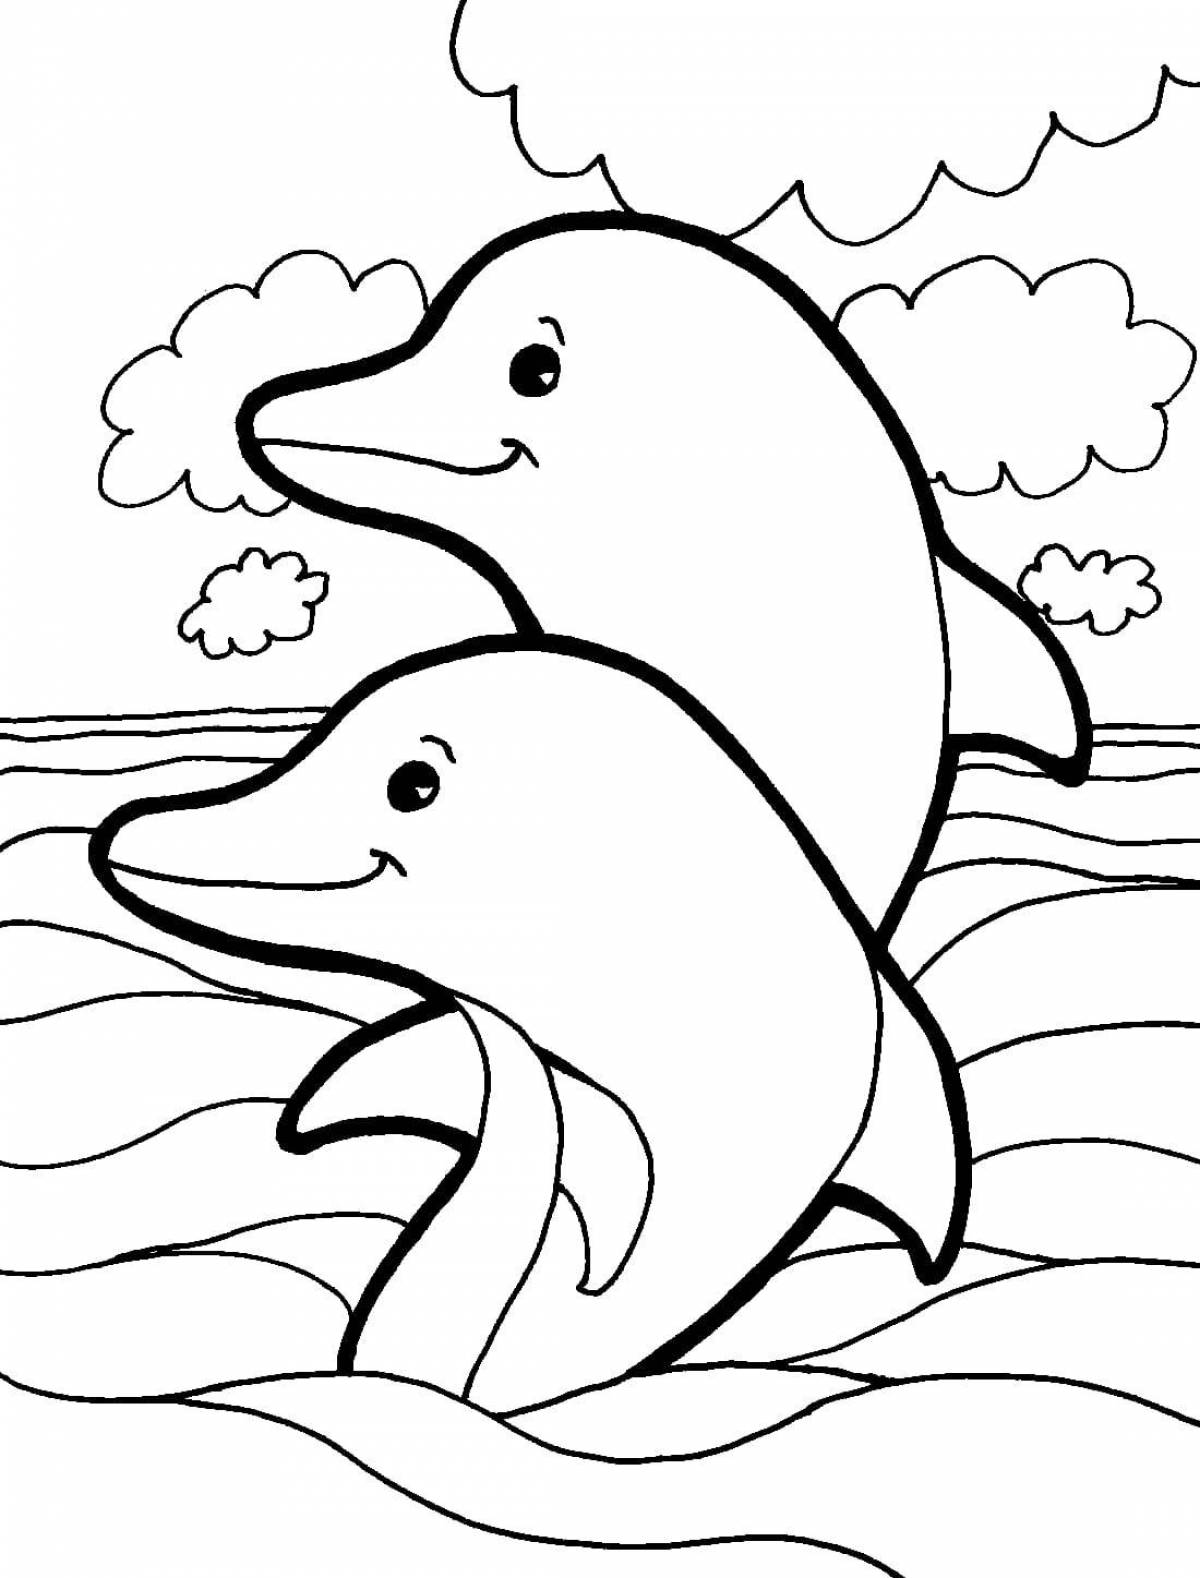 Чудесная раскраска дельфинов для детей